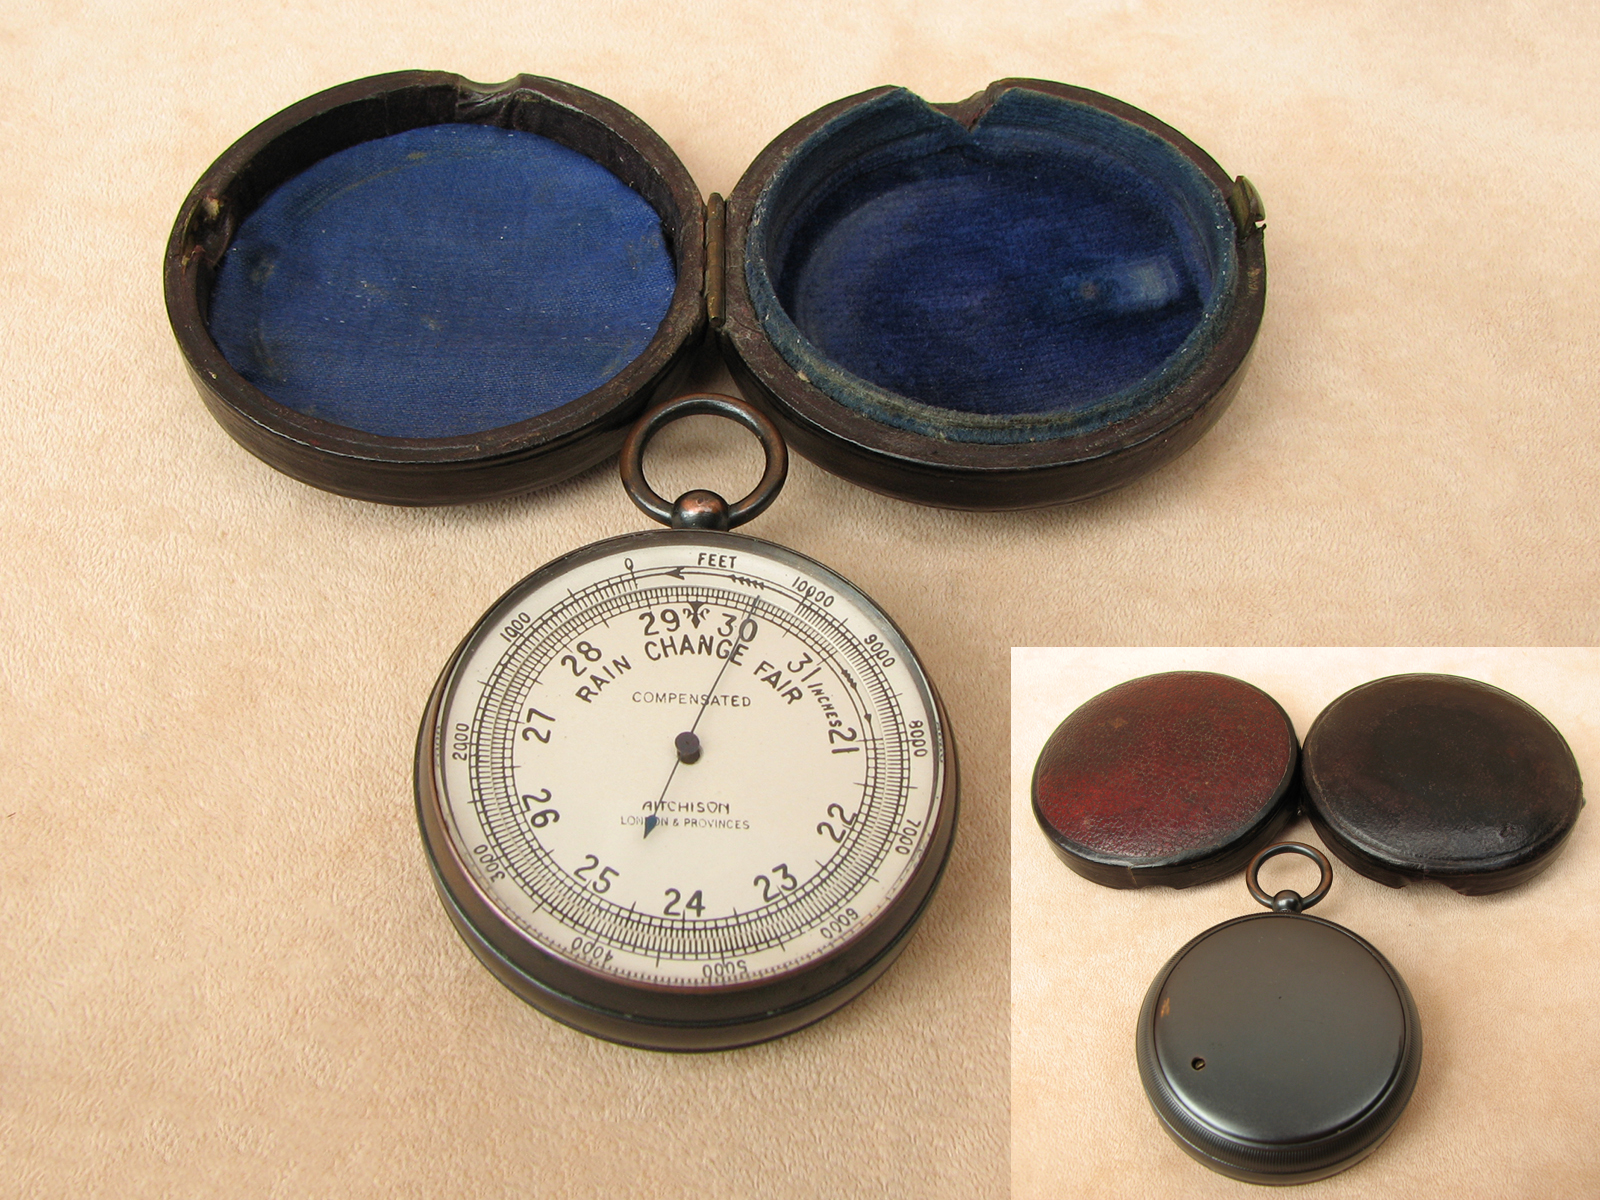 Antique pocket barometer signed Aitchison London & Provinces